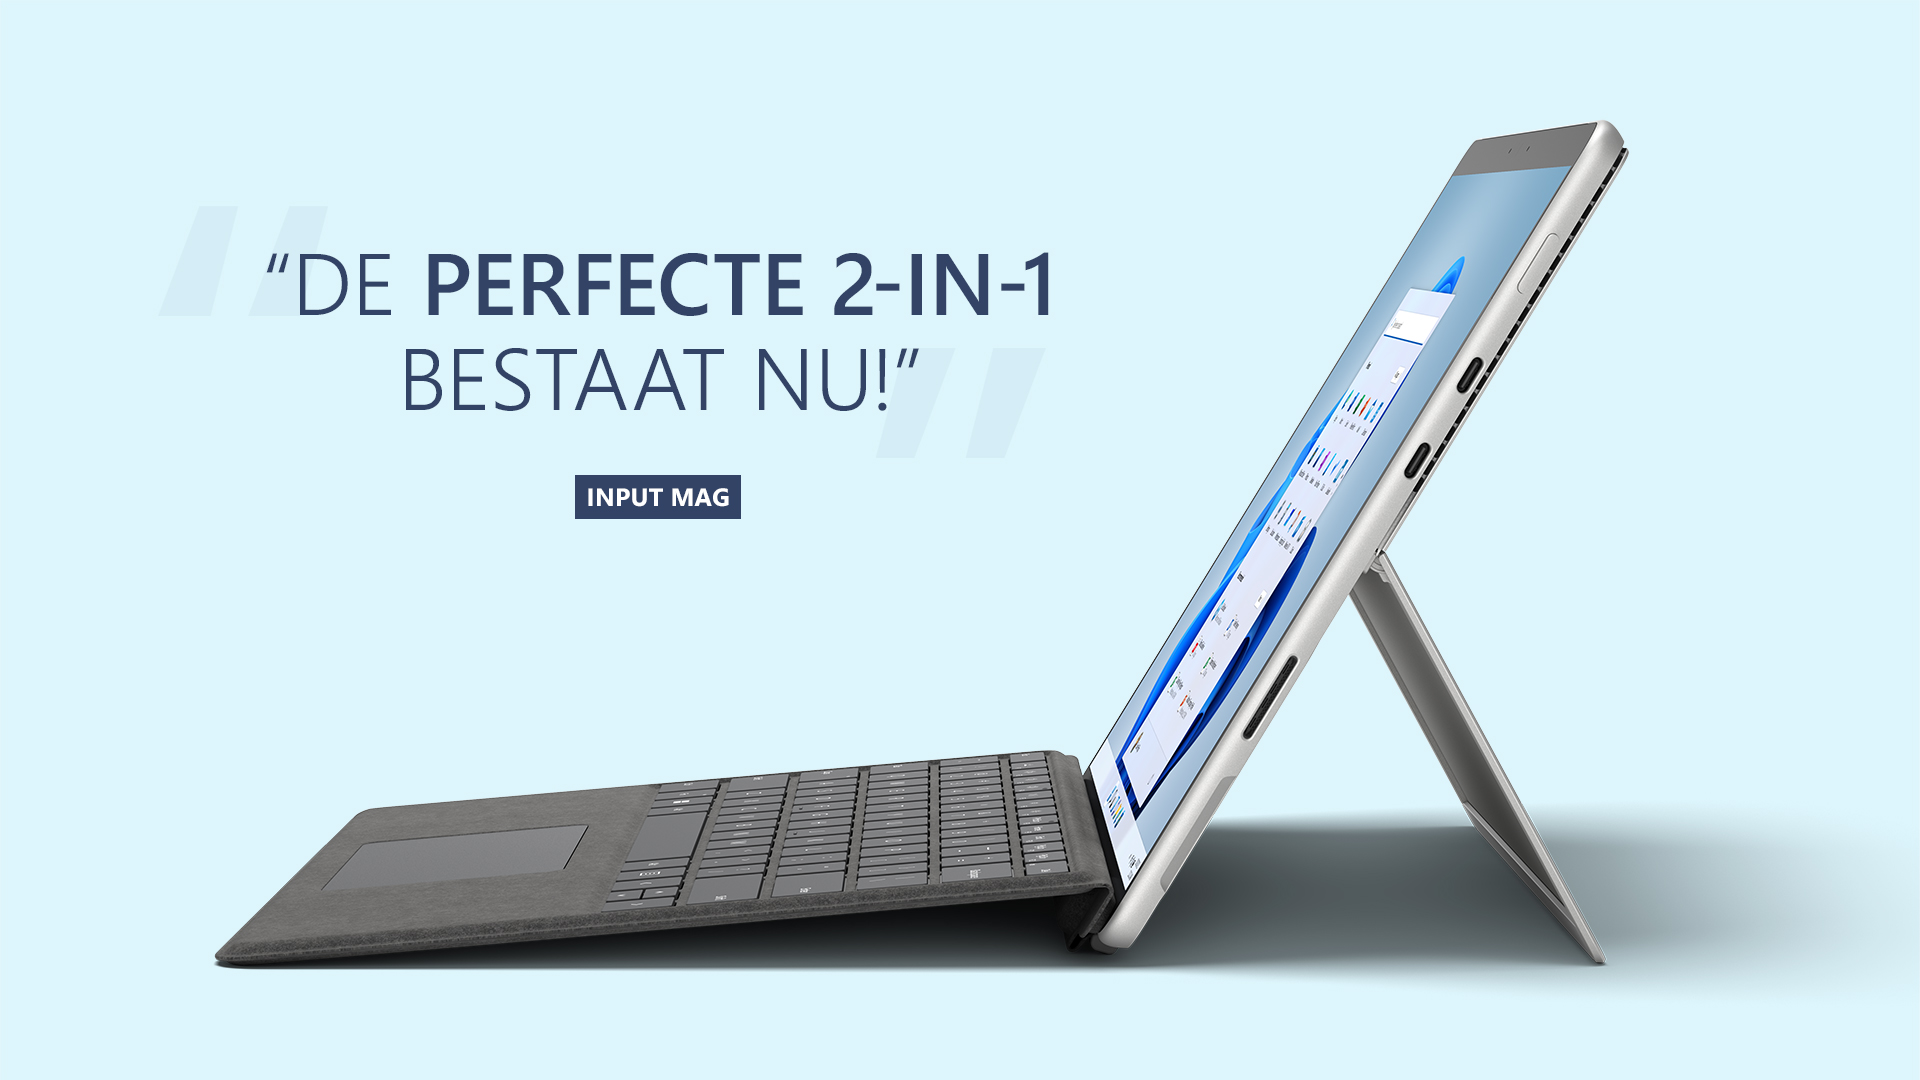 Een Surface 2-in-1 met Windows 11 geïnstalleerd, inclusief een grafische kop met de tekst: De perfecte 2-in-1 bestaat nu! door Input Mag.